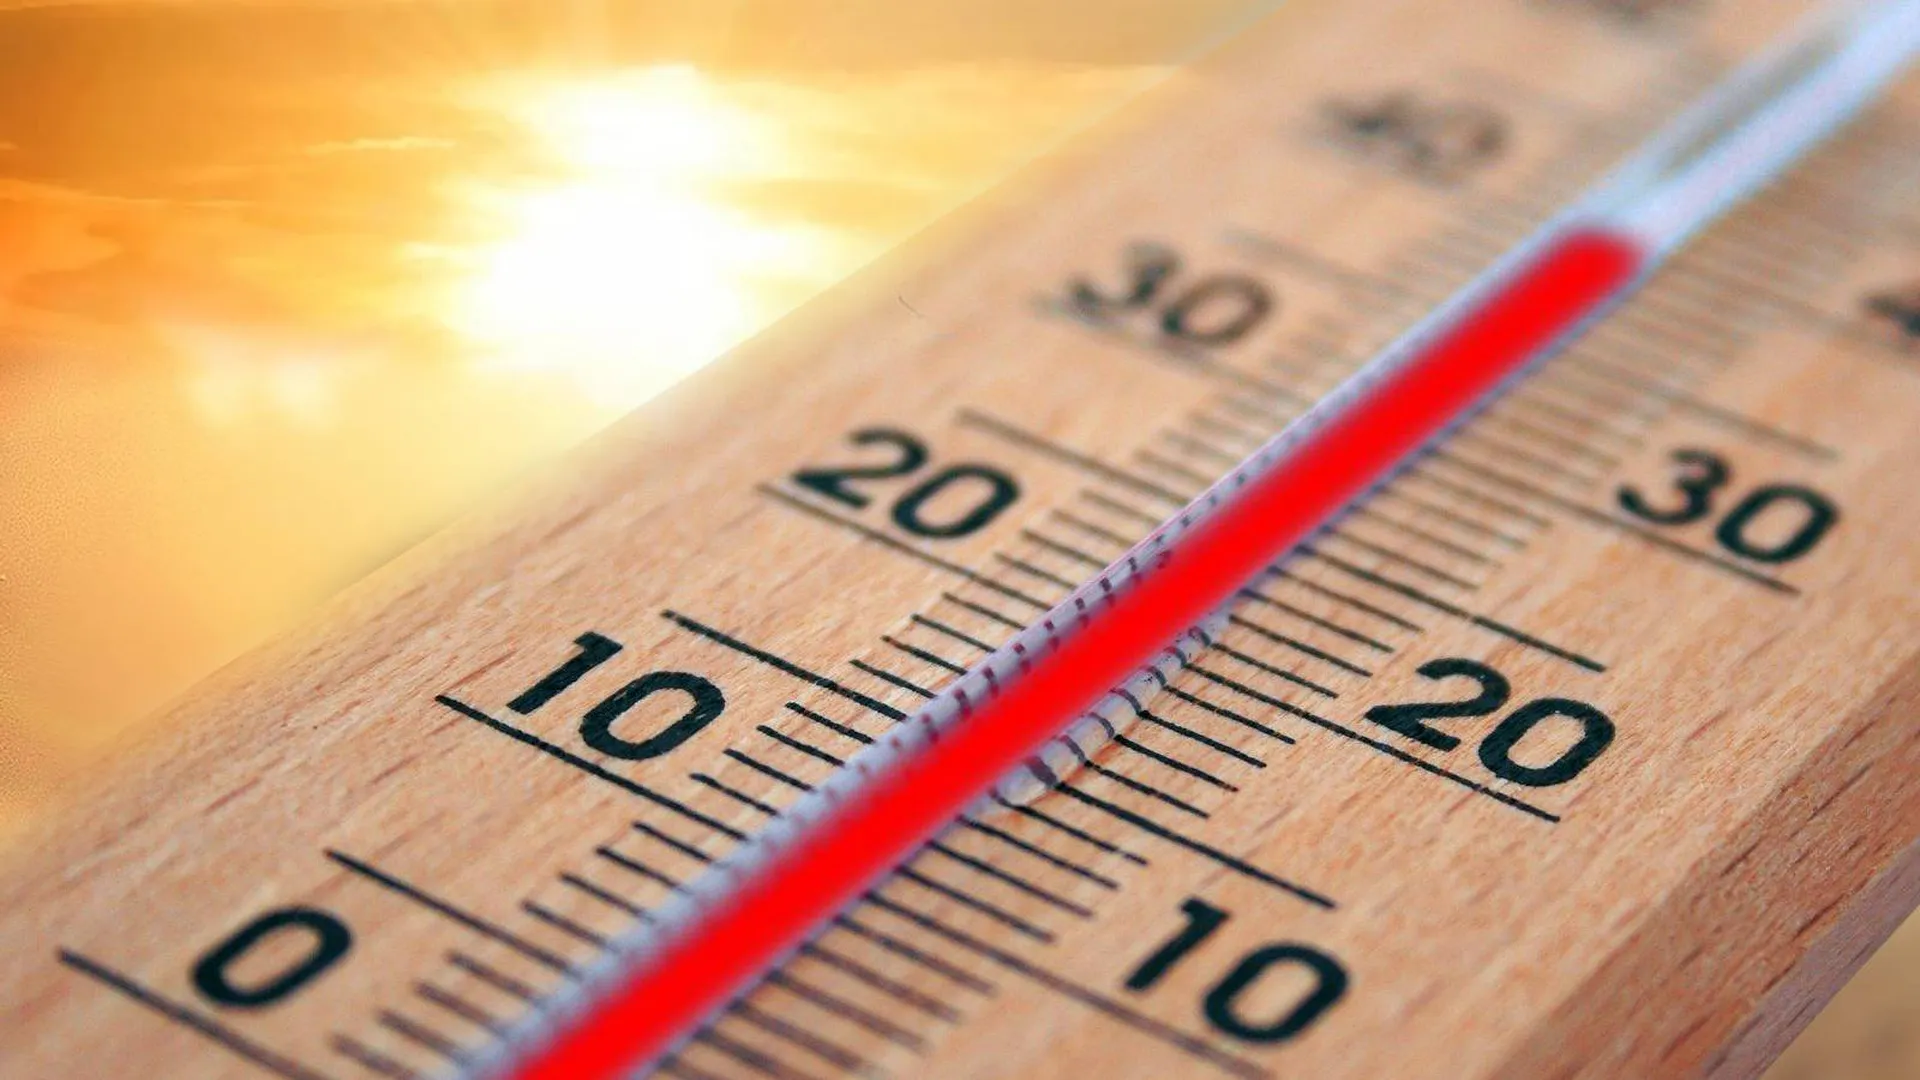 Термометр показывает +40 градусов на фоне солнца